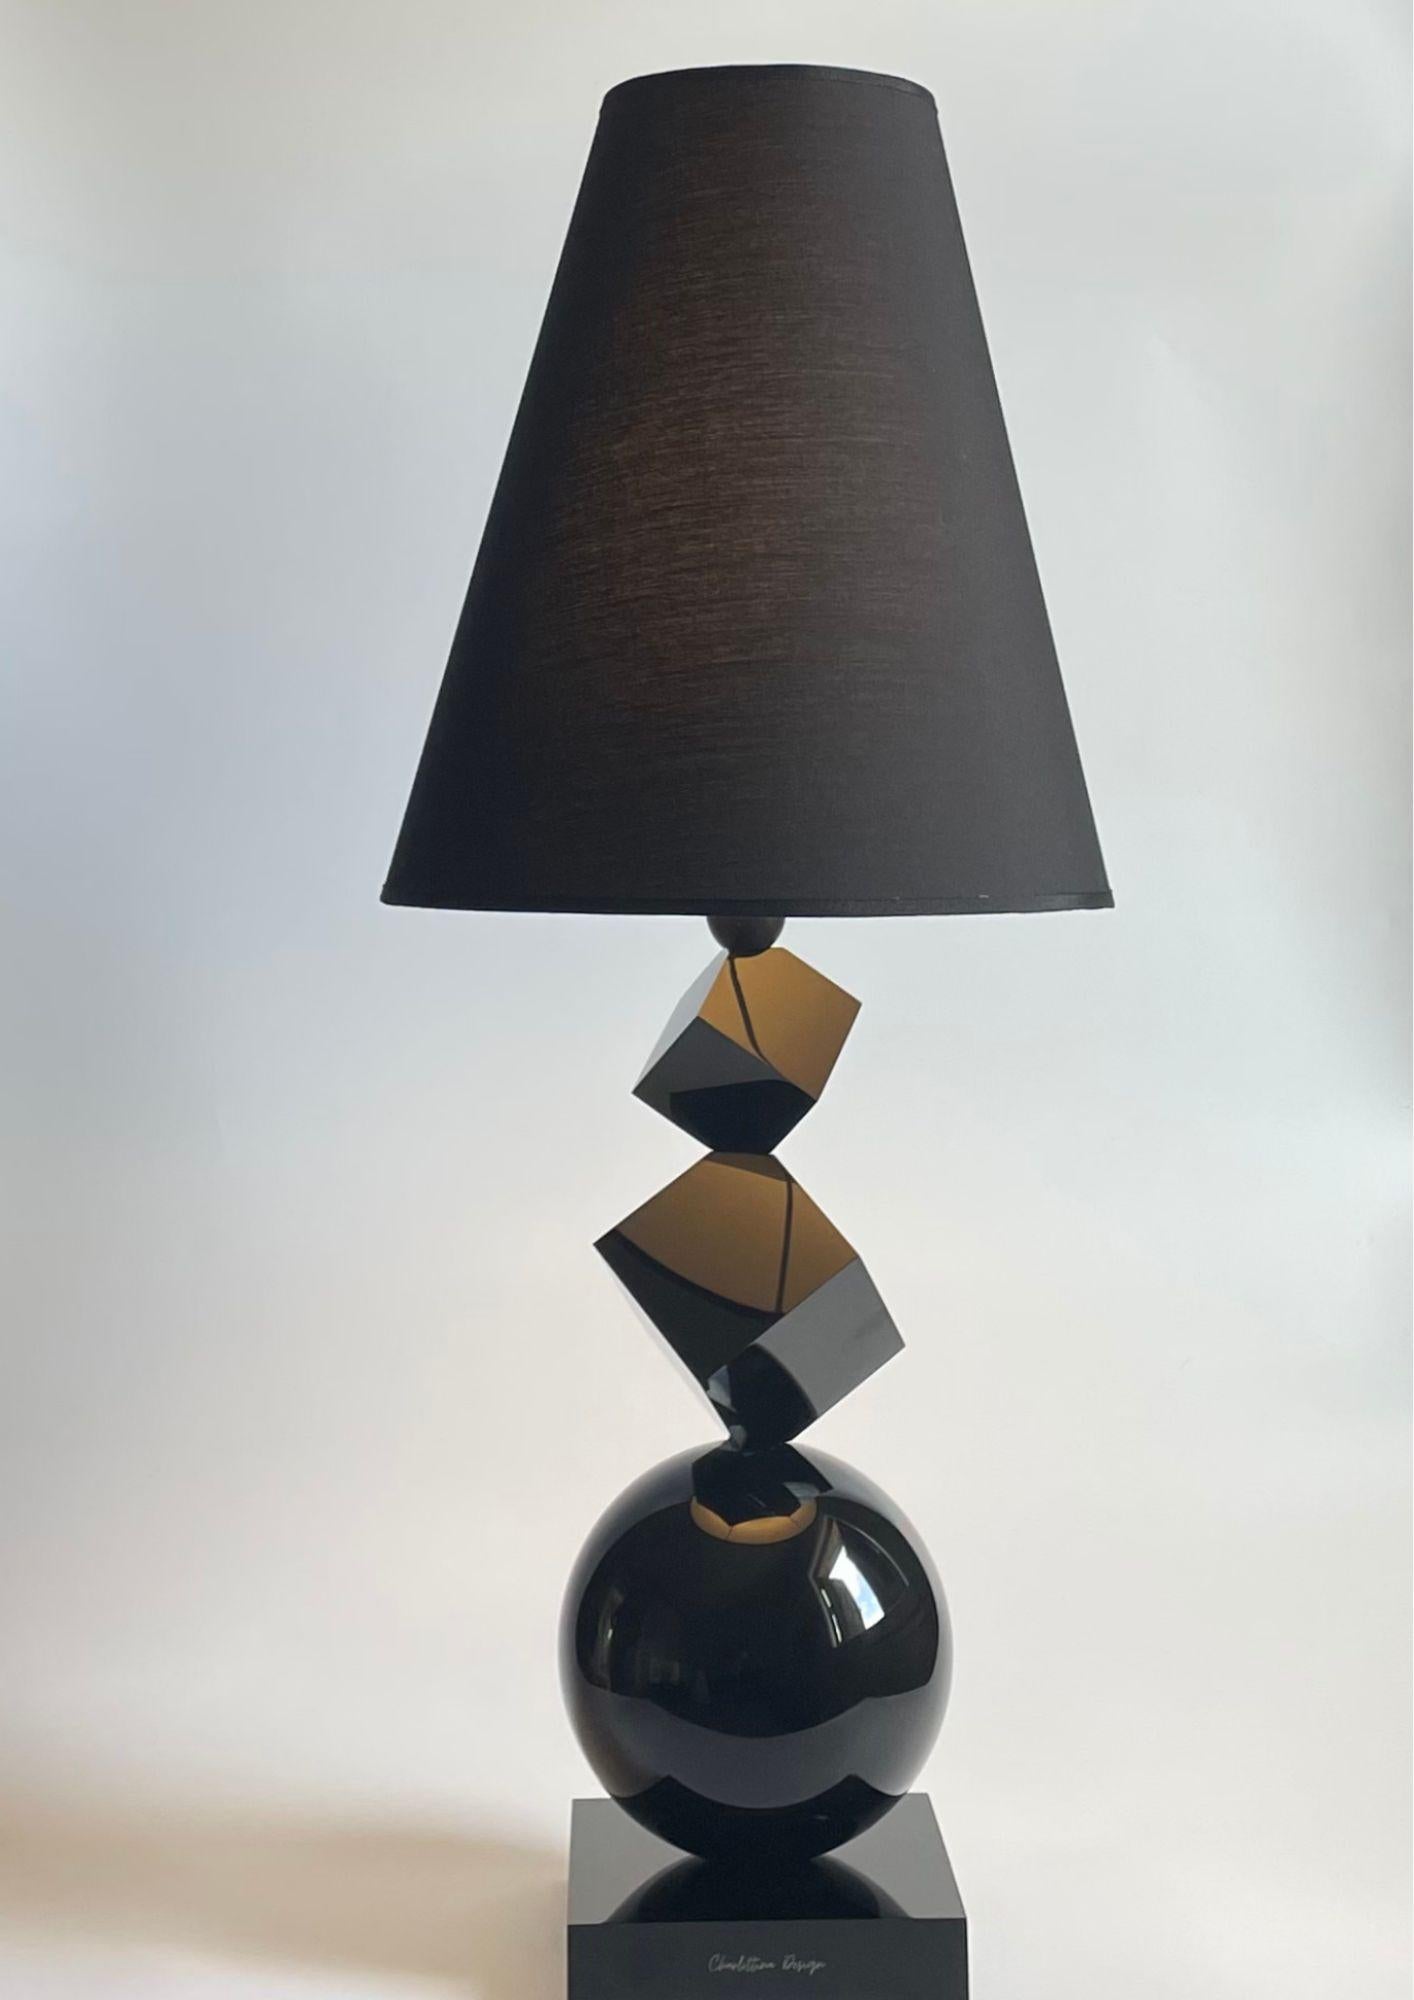 Charlottina Design è una lampada elegante, versatile gioiello della tua casa. Il profilo del modello MIA stupisce ed affascina come tutte le Charlottina Design che con i loro giochi di luce tipici della resina lavorata artigianalmente offrono